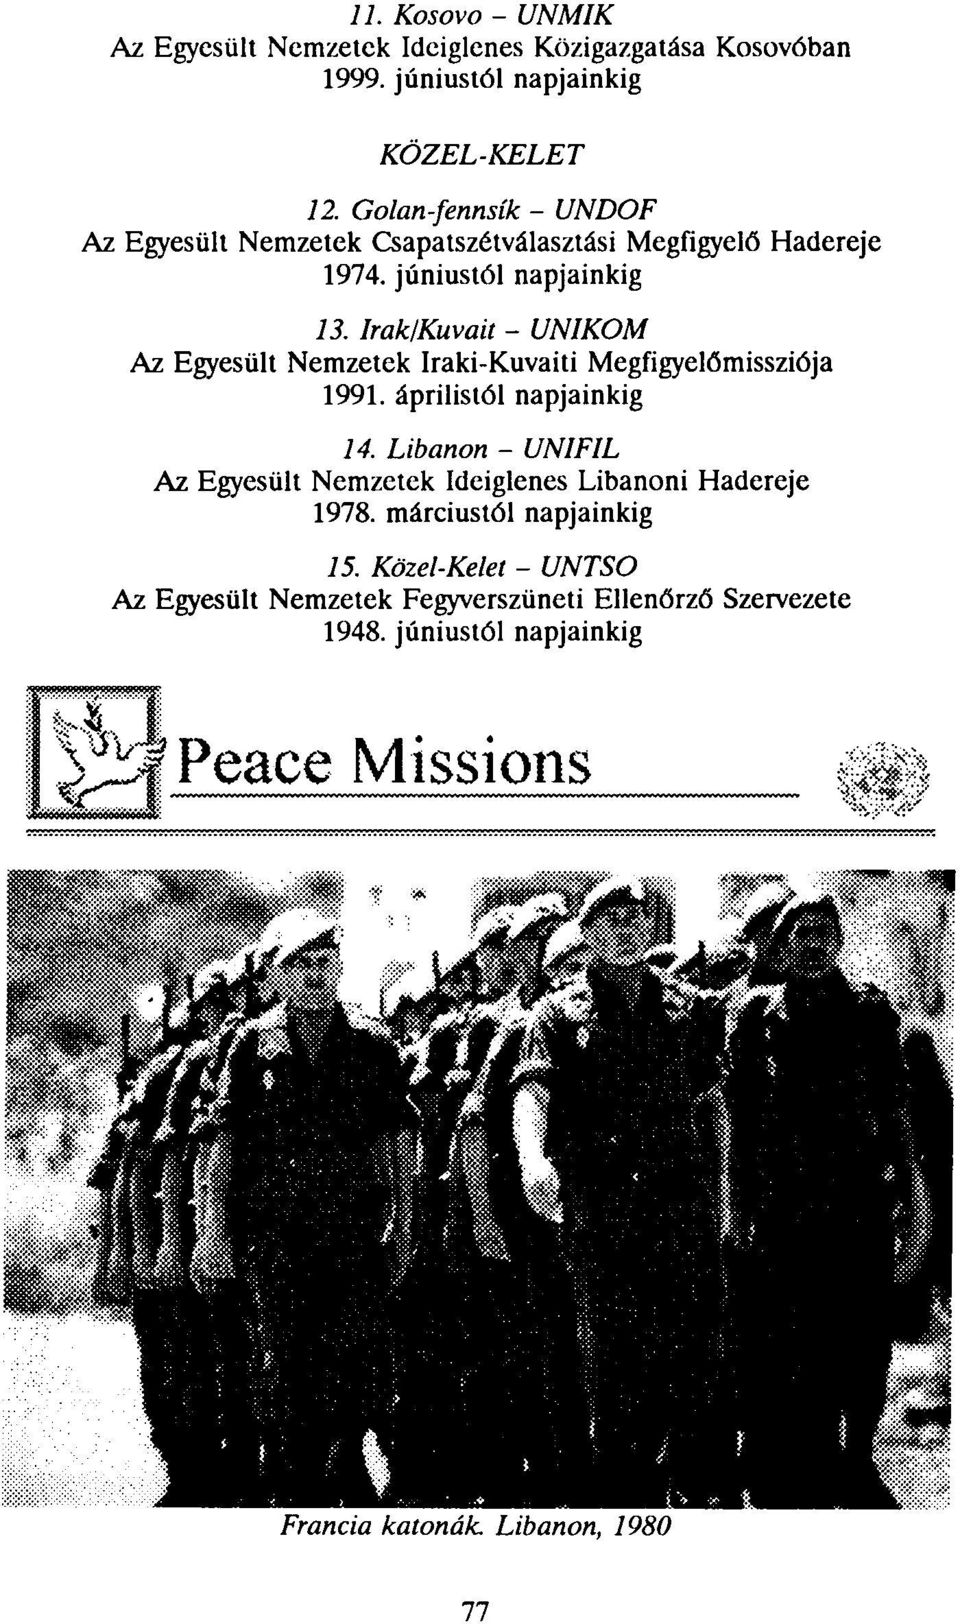 Irak/Kuvait - UNIKOM Az Egyesült Nemzetek Iraki-Kuvaiti Megfigyelőmissziója 1991. áprilistól napjainkig 14.